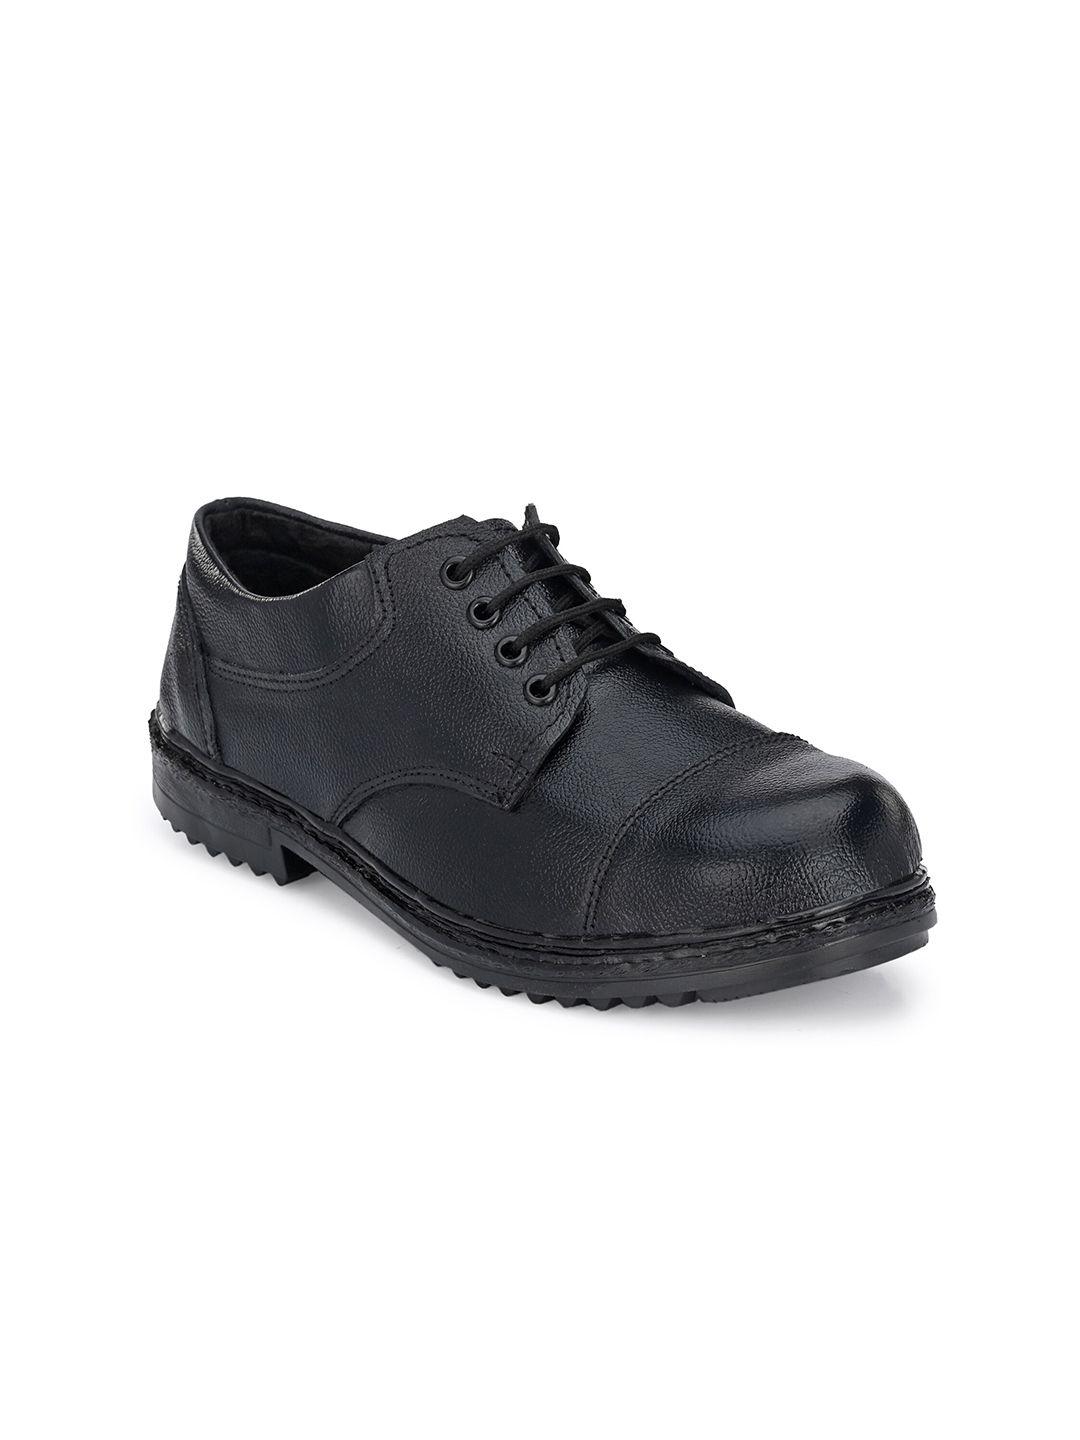 hundo p men black leather trekking shoes